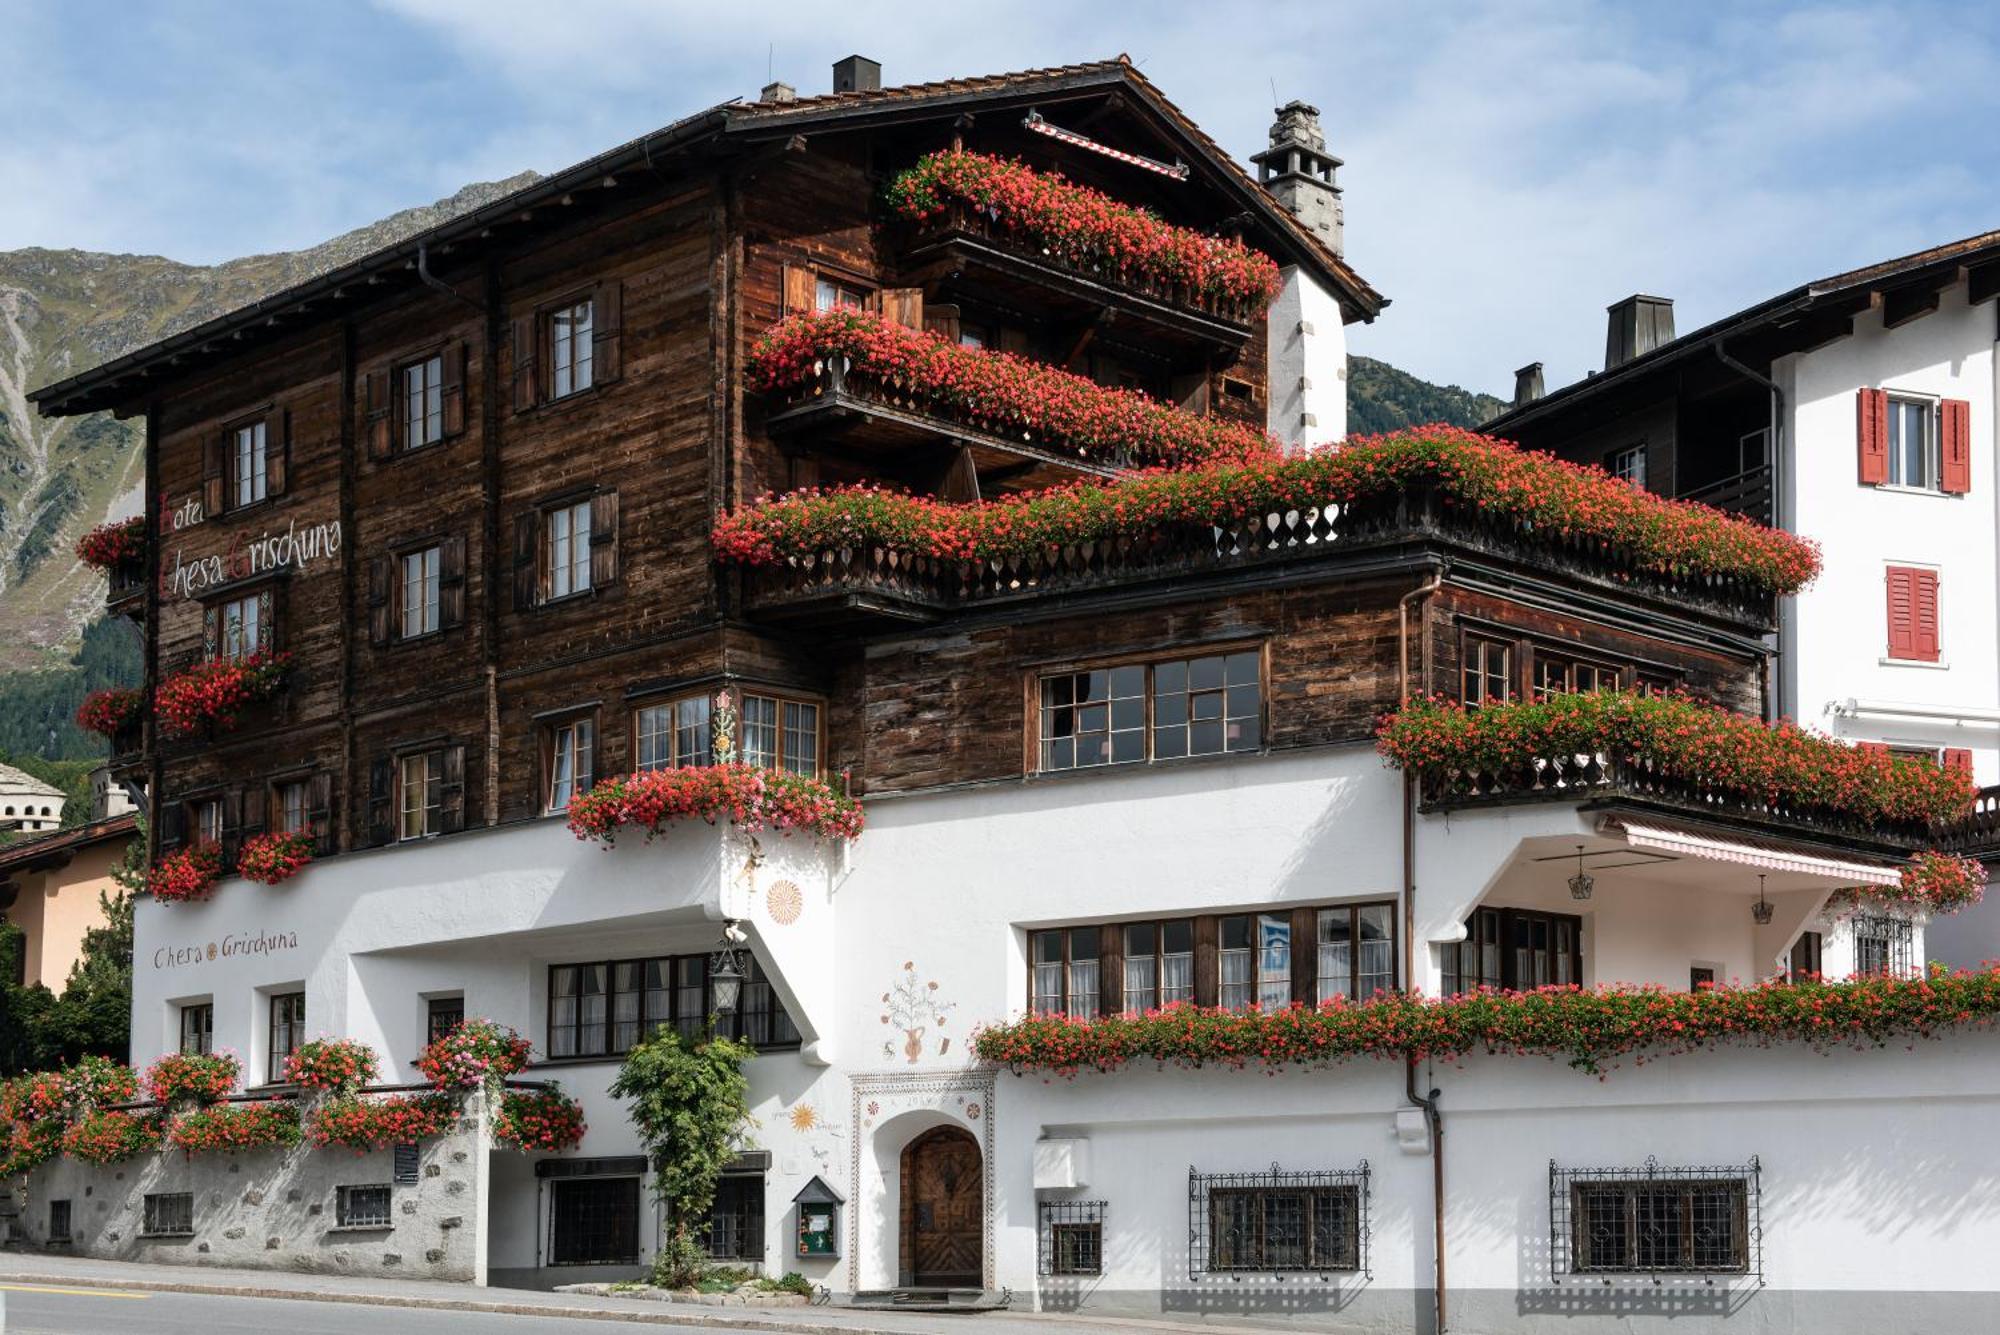 Hotel Chesa Grischuna Klosters Exteriör bild